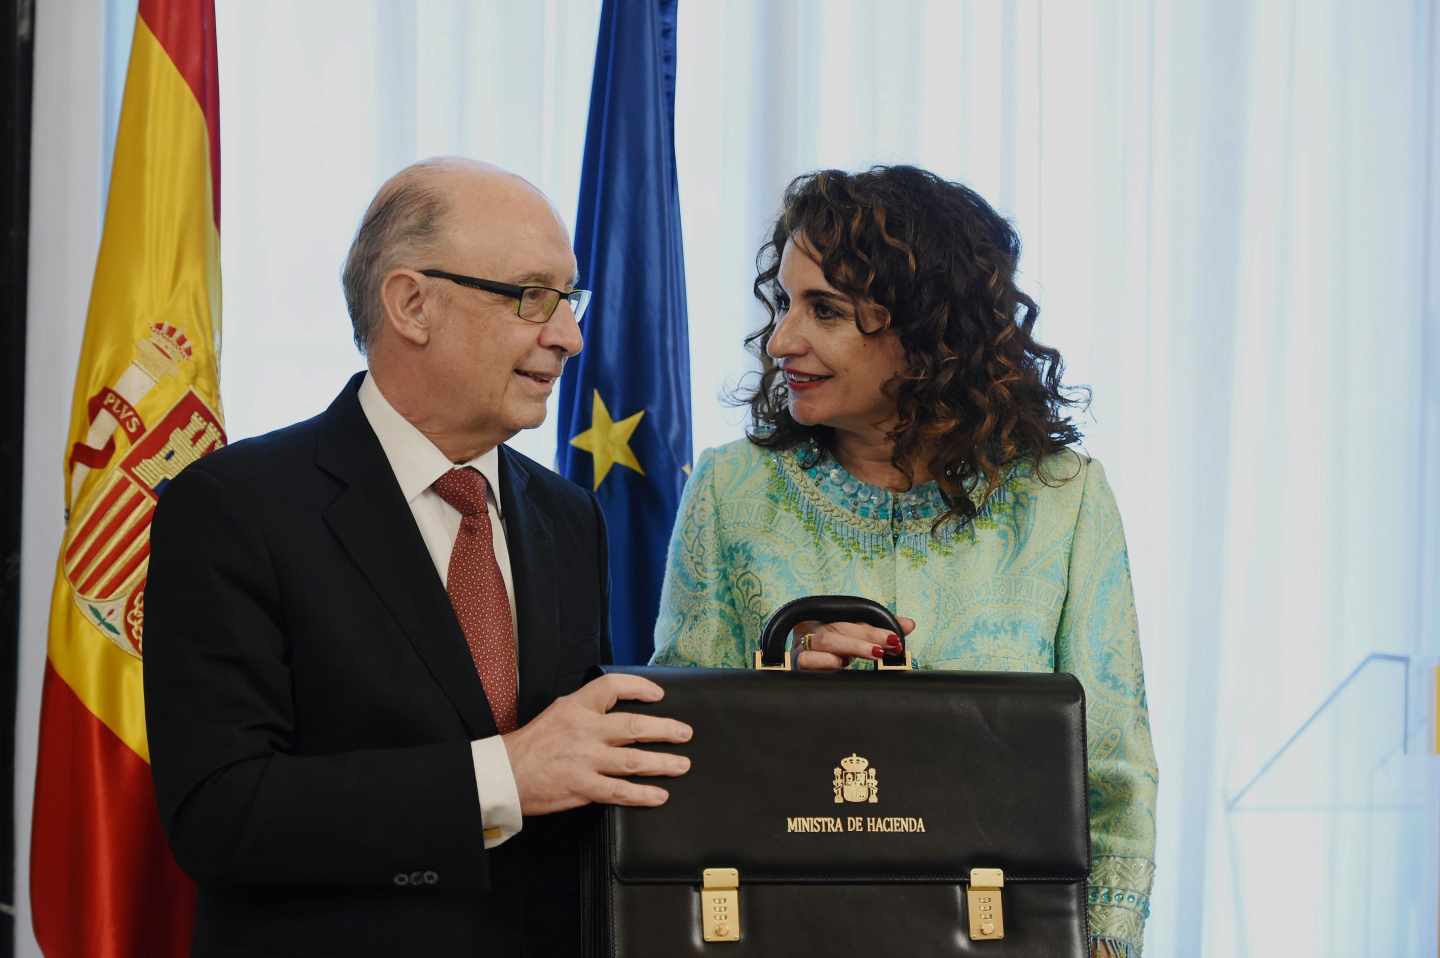 La nueva ministra de Hacienda, María Jesús Montero, felicitada por el ministro saliente, Cristóbal Montoro.